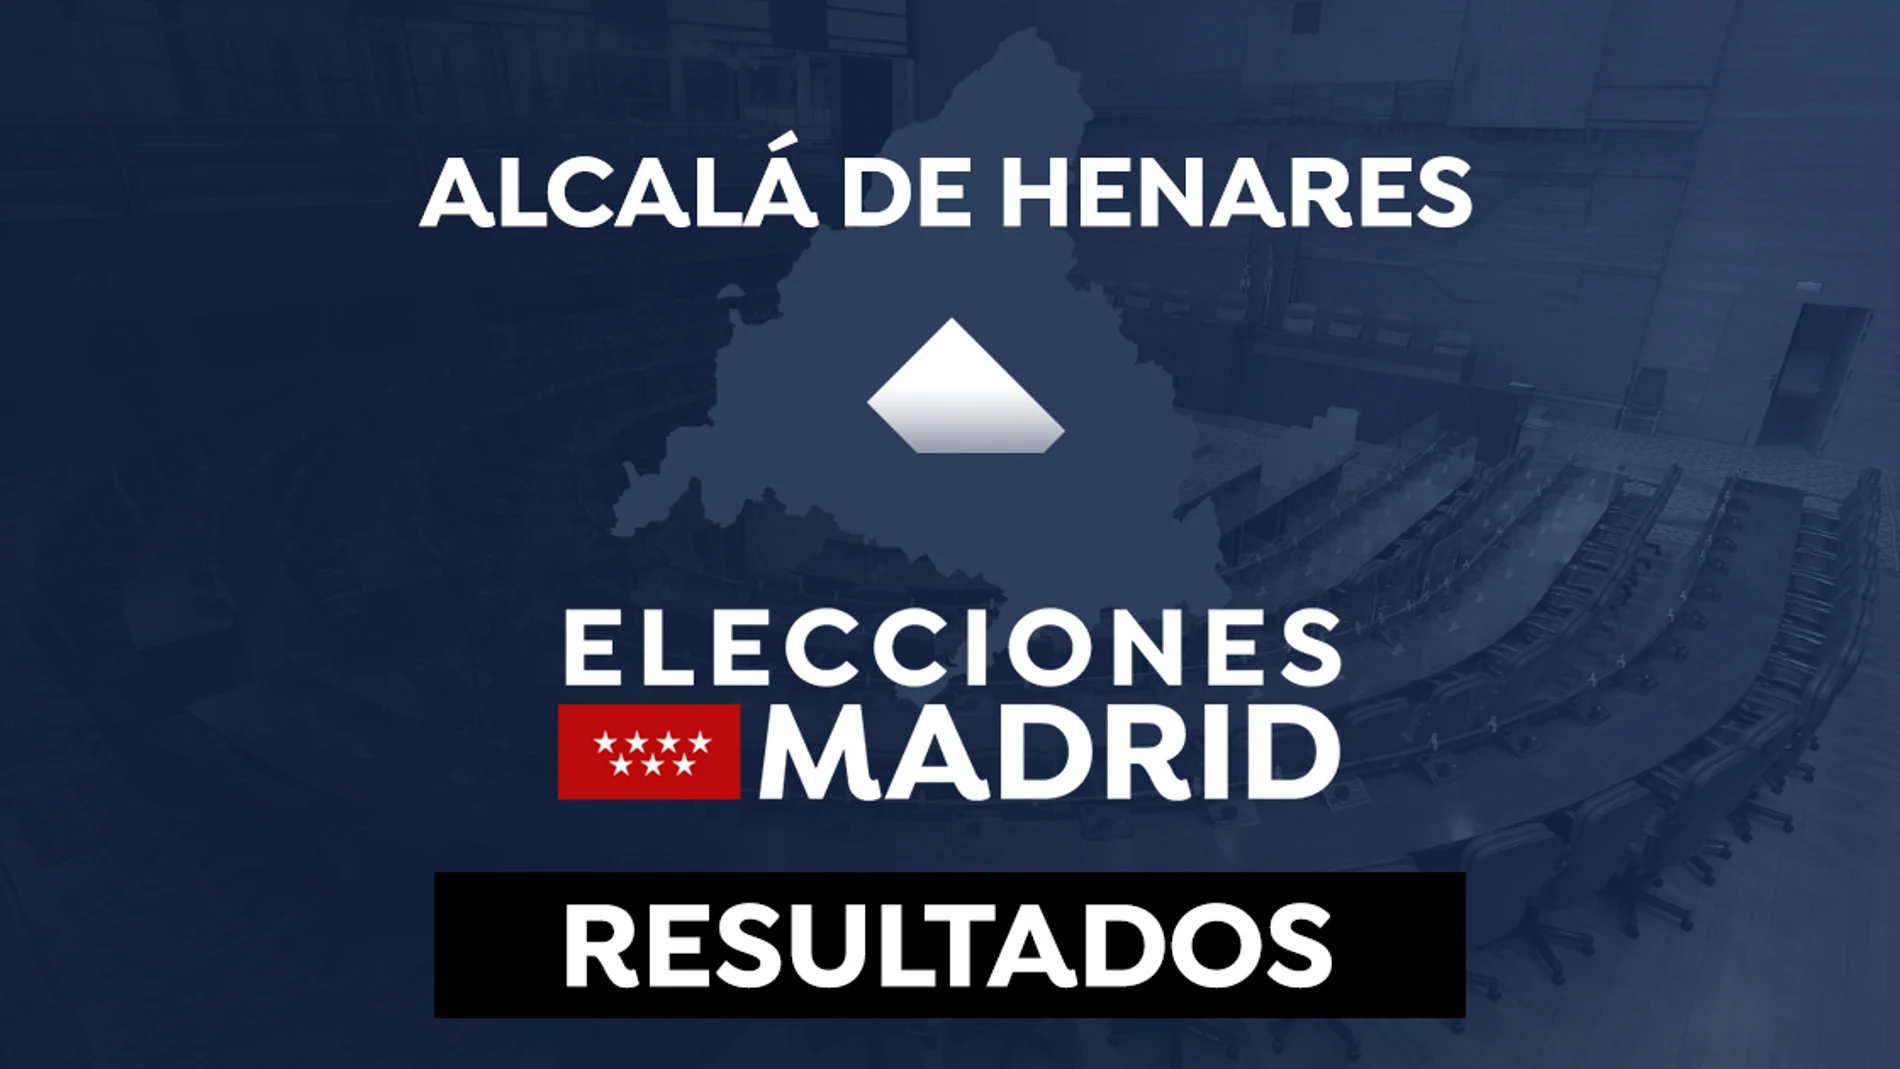 Elecciones Madrid 2021: Resultado Alcalá de Henares